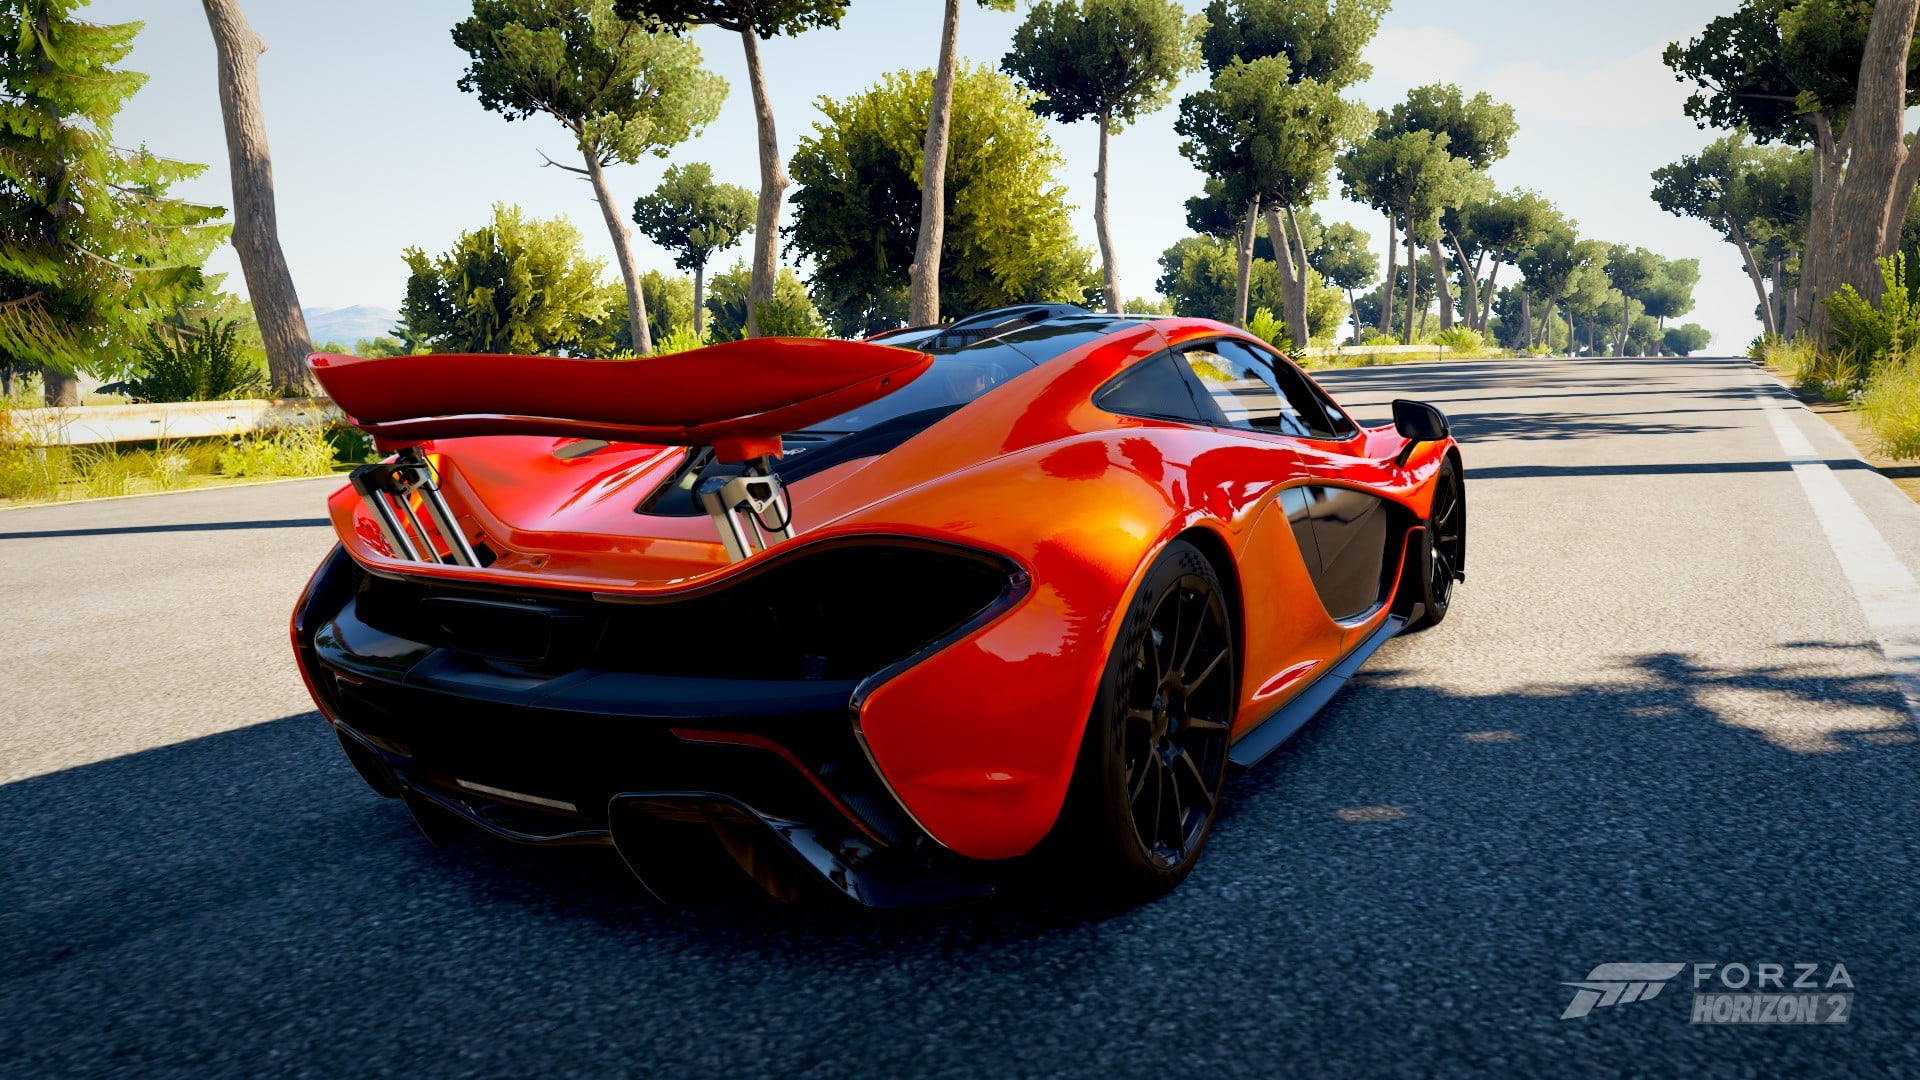 orange sports car Forza game screenshot, McLaren P1, Forza Horizon 2